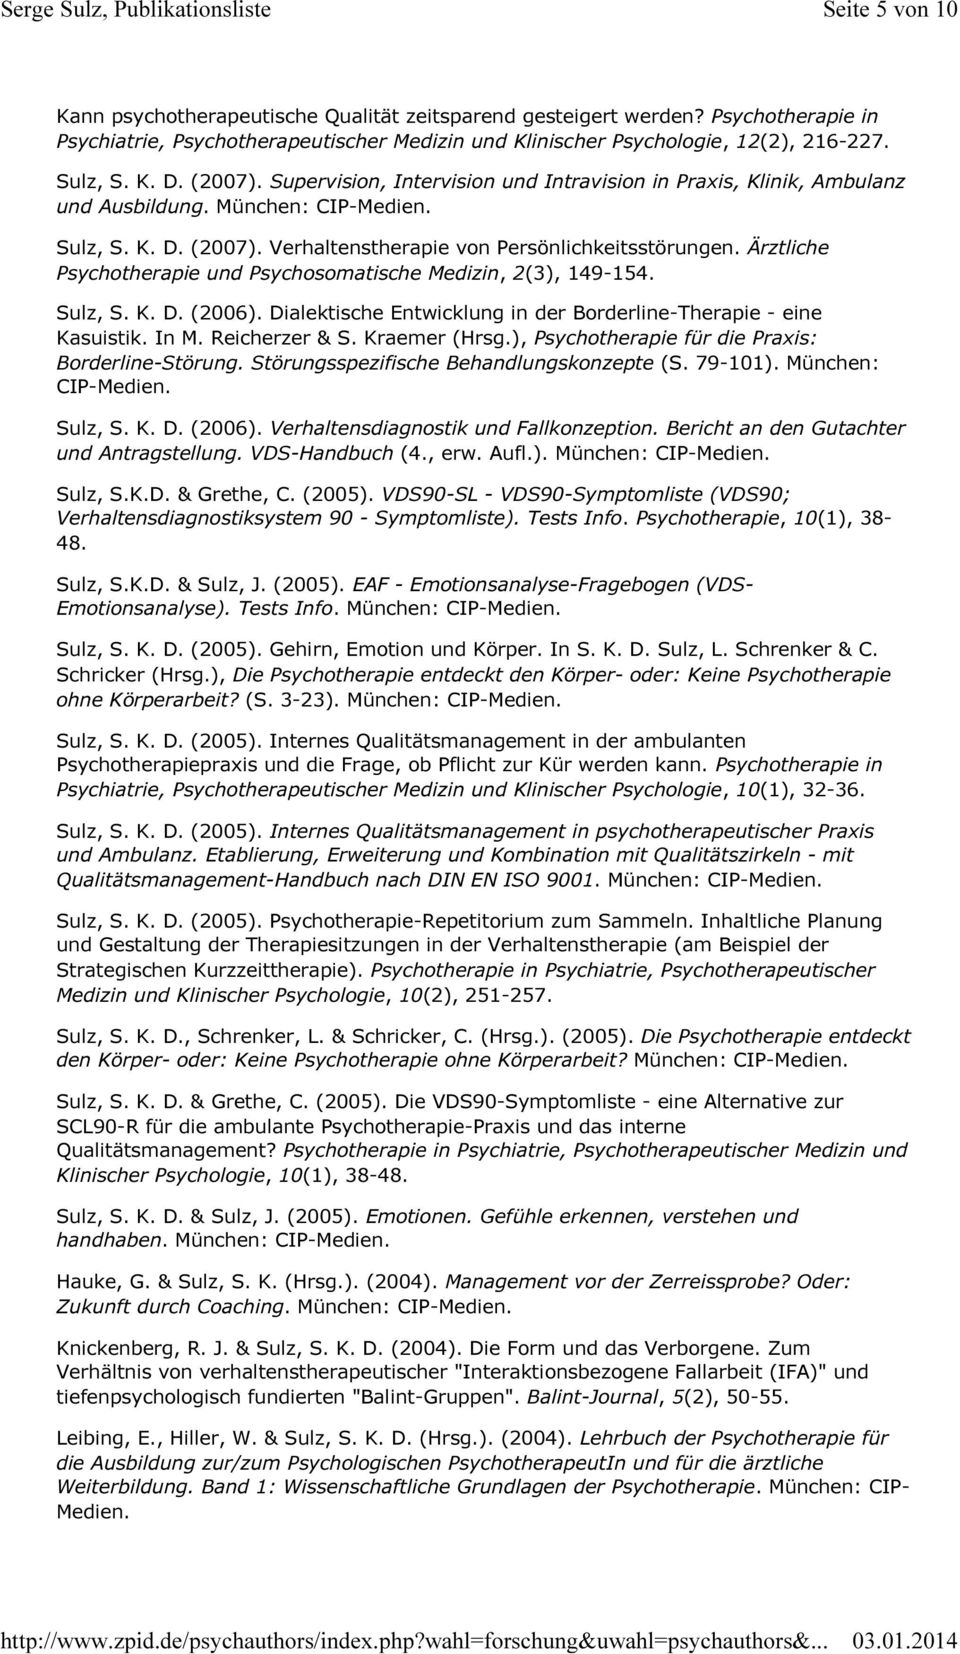 Ärztliche Psychotherapie und Psychosomatische Medizin, 2(3), 149-154. Sulz, S. K. D. (2006). Dialektische Entwicklung in der Borderline-Therapie - eine Kasuistik. In M. Reicherzer & S. Kraemer (Hrsg.